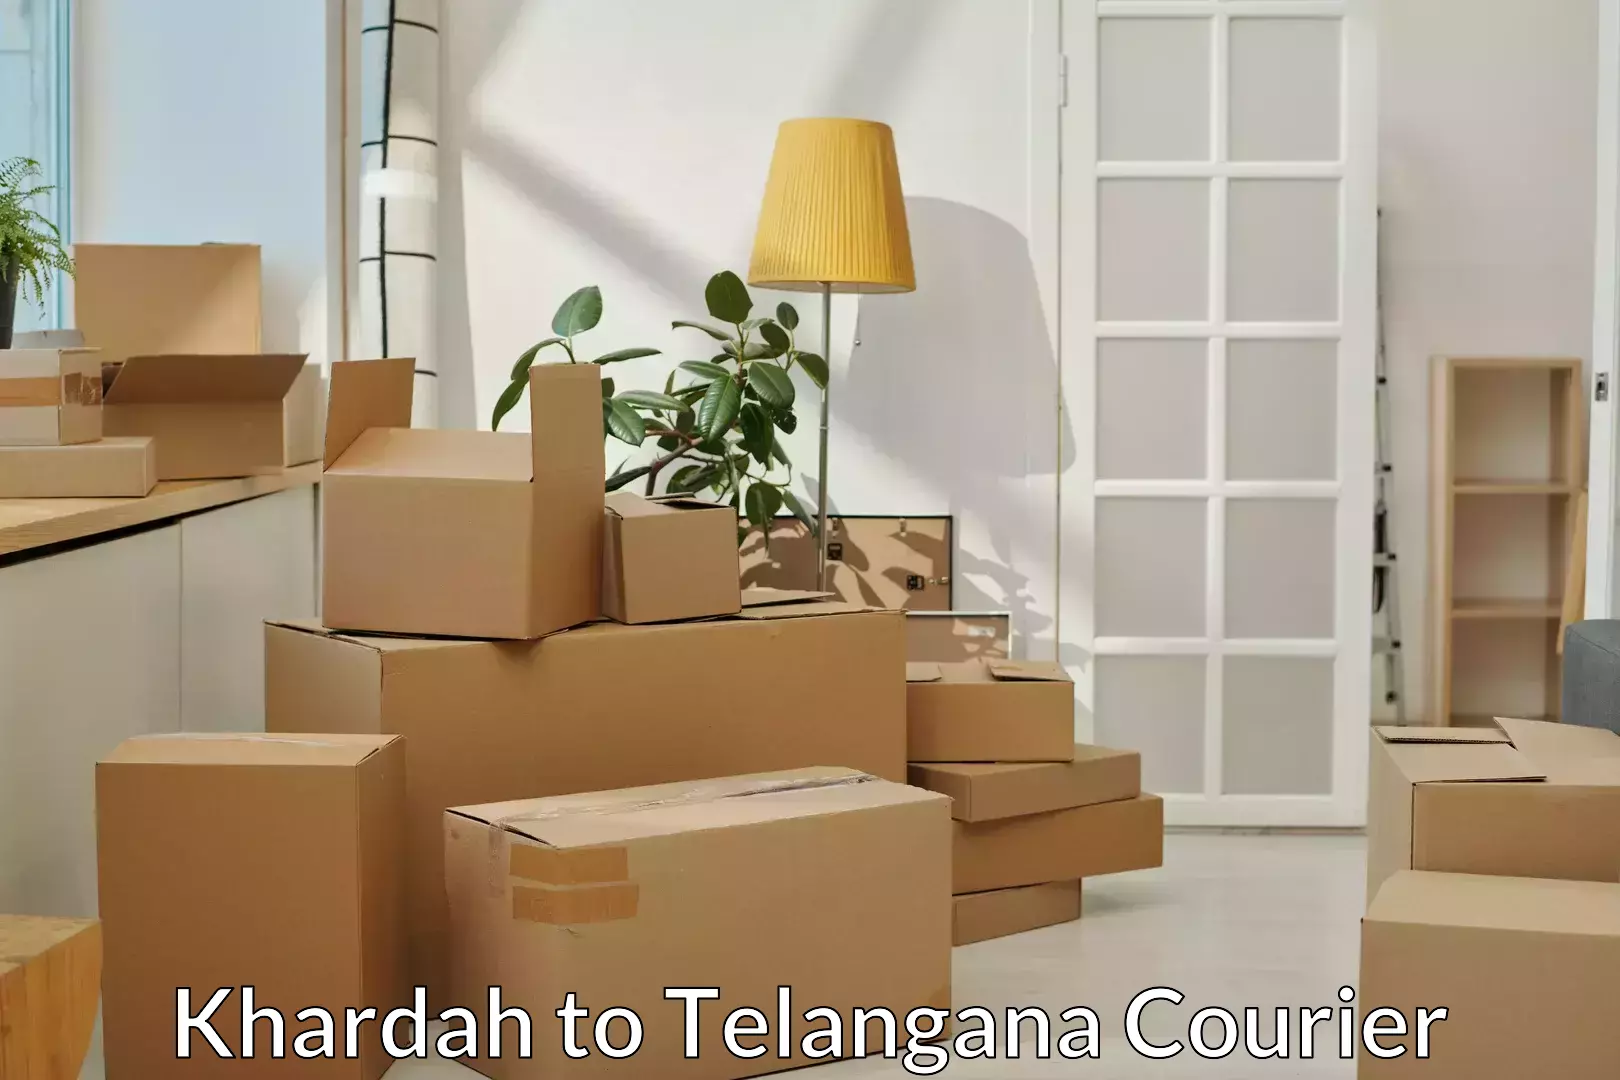 Furniture transport service Khardah to Tiryani